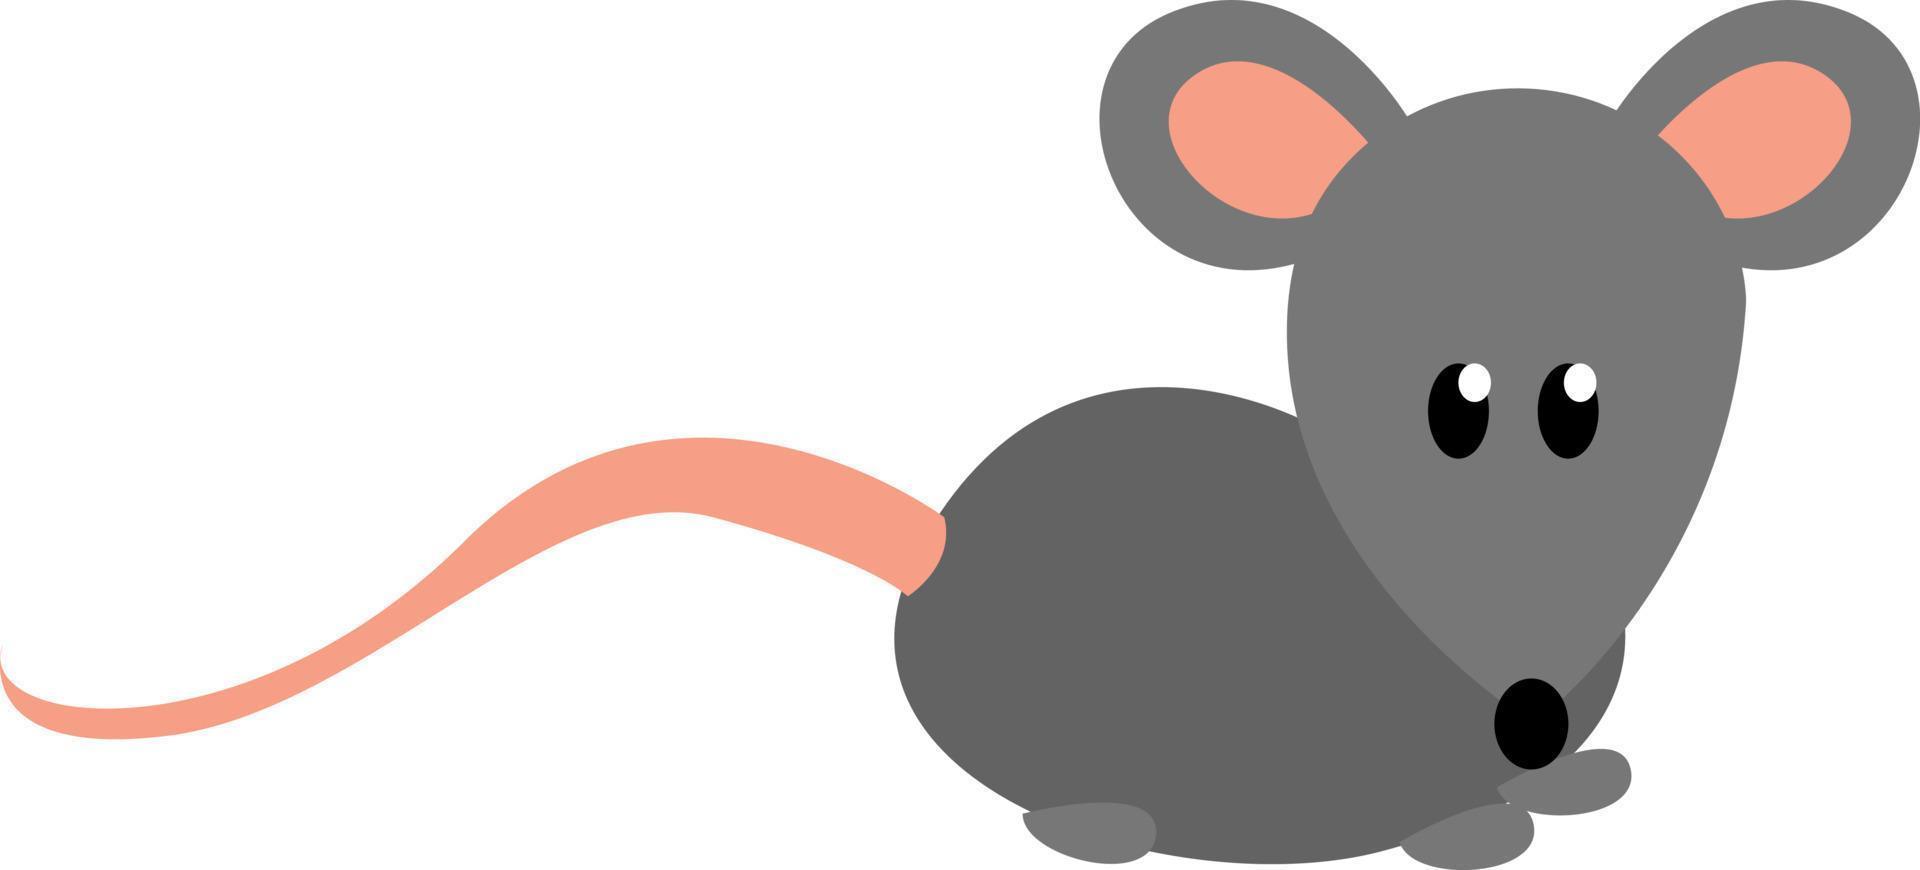 souris grise, illustration, vecteur sur fond blanc.